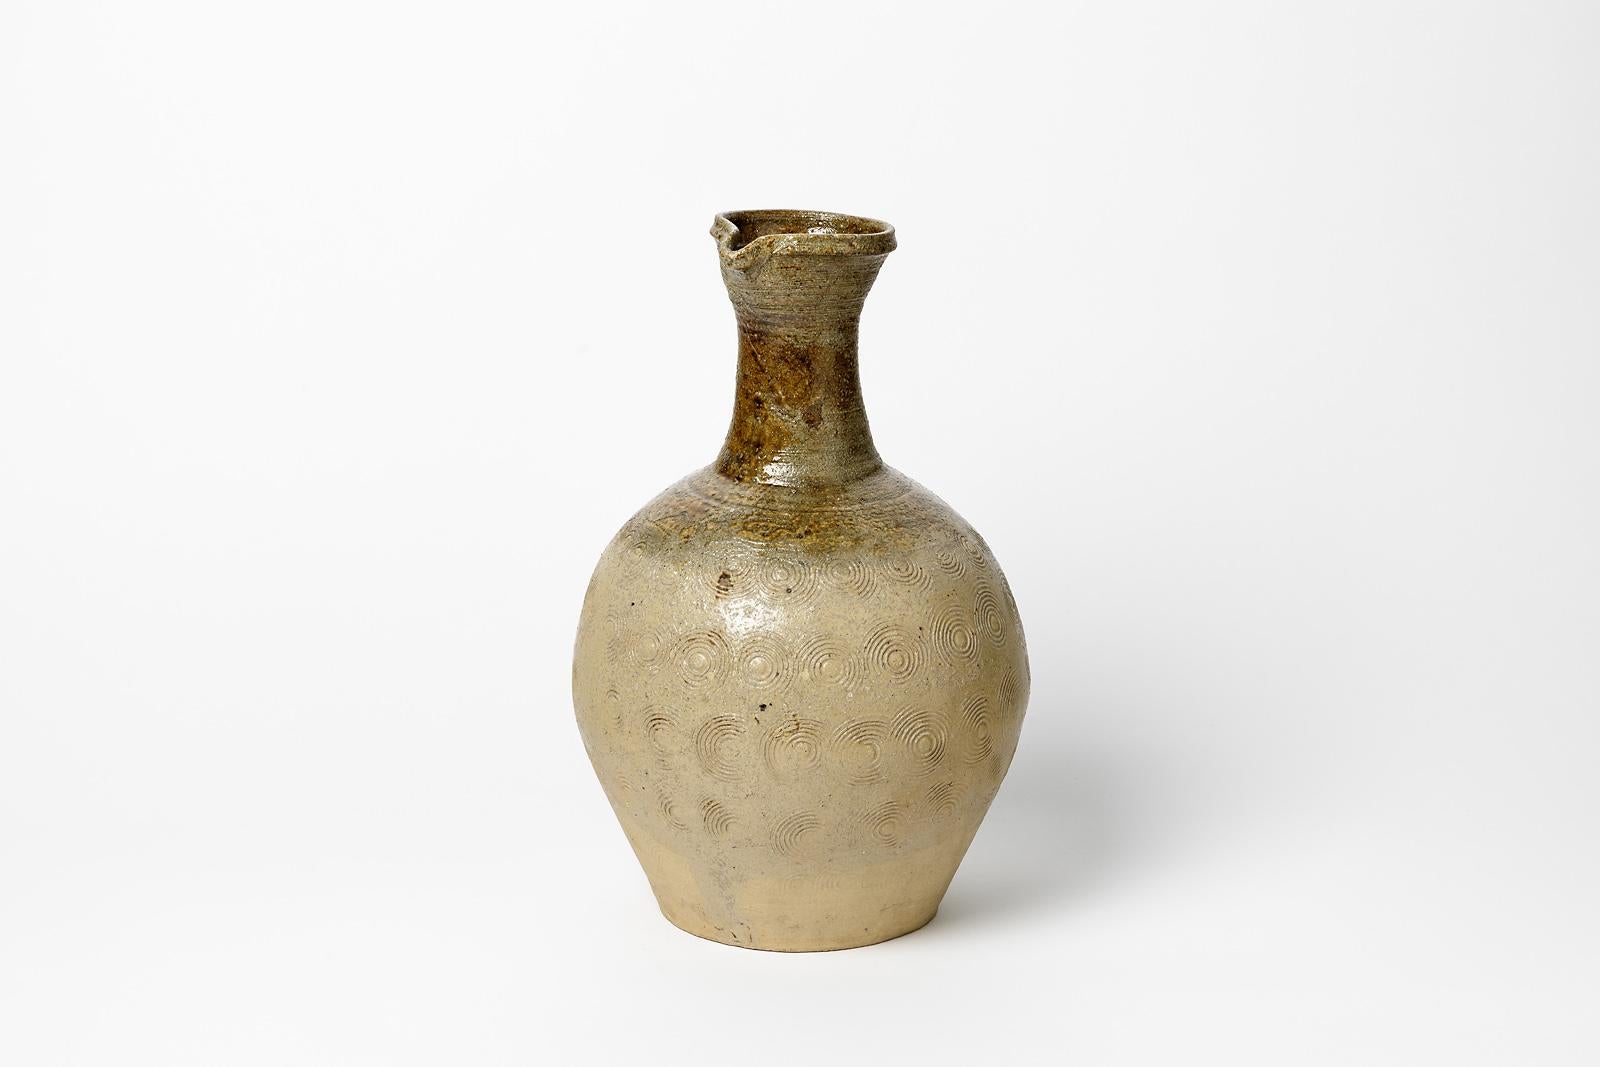 Céramique française fabriquée à la main

Vase original en céramique grès avec des couleurs blanches et brunes

Condition originale parfaite

Circa 1970

Mesures : Hauteur : 29 cm. Largeur : 17 cm.